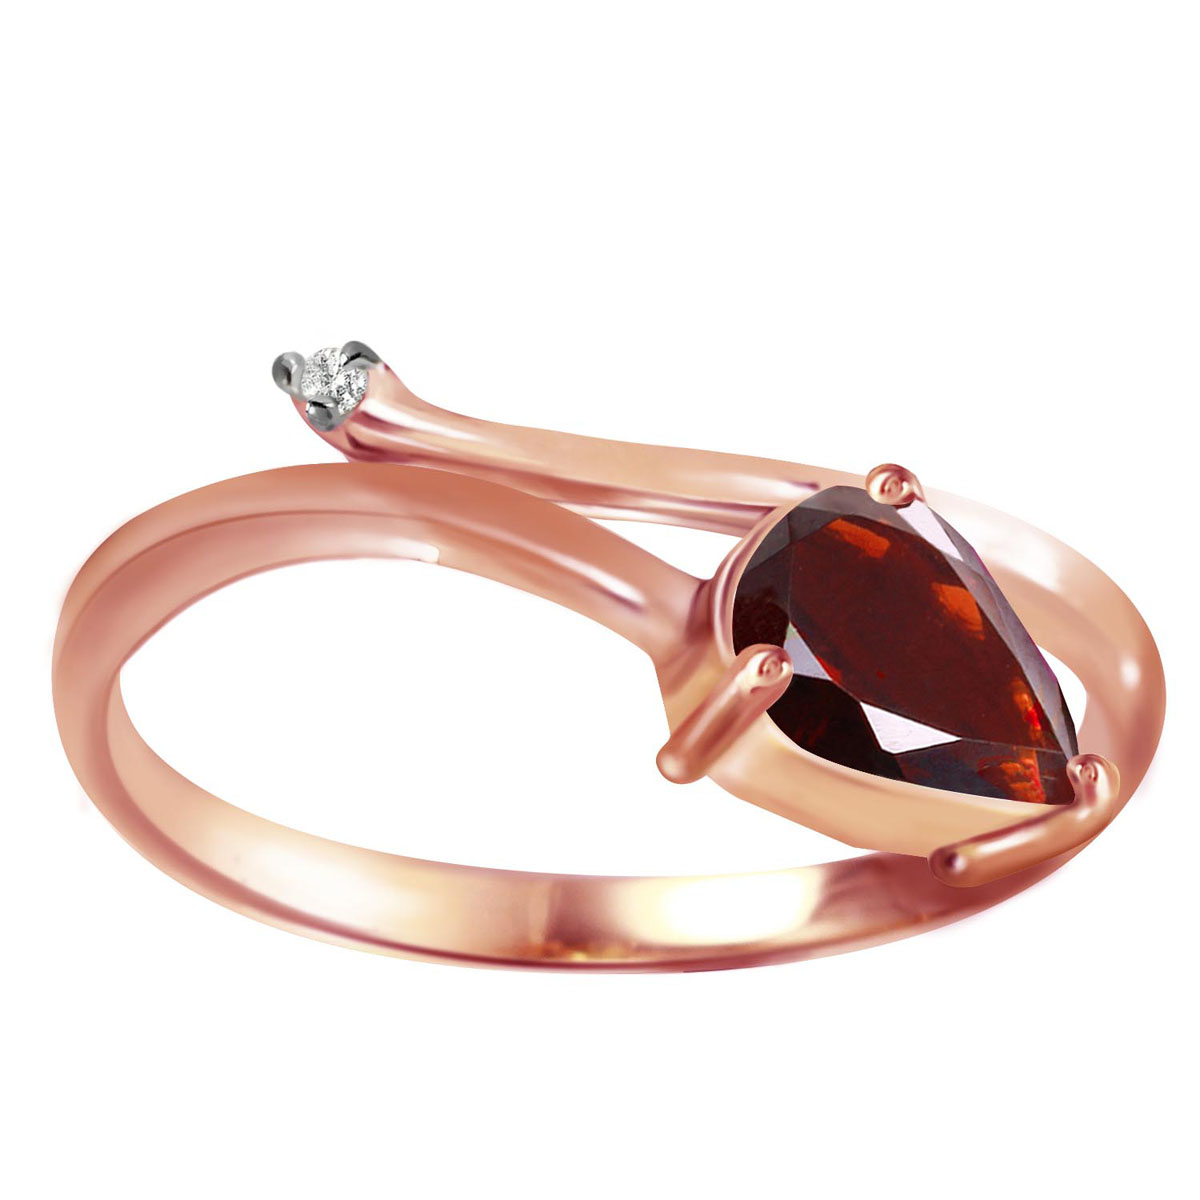 Garnet & Diamond Top & Tail Ring in 9ct Rose Gold